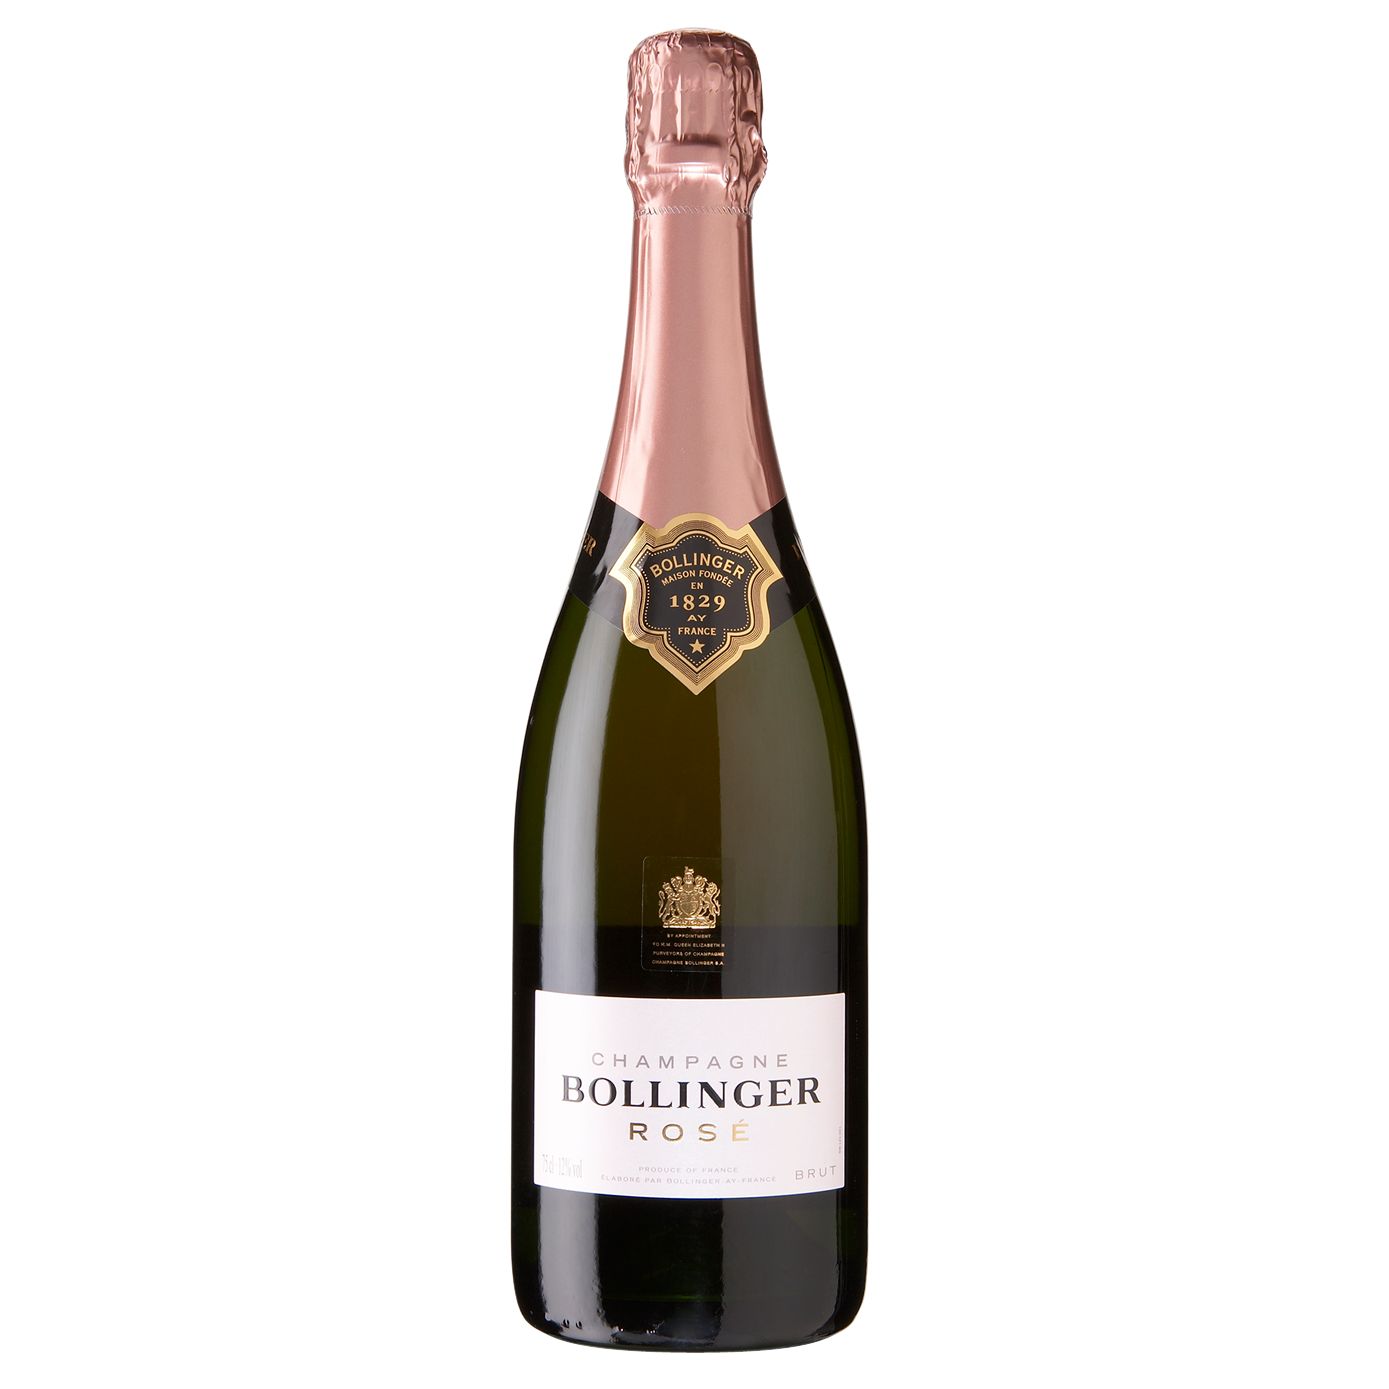 Bollinger Rosé NV Champagne, France at John Lewis